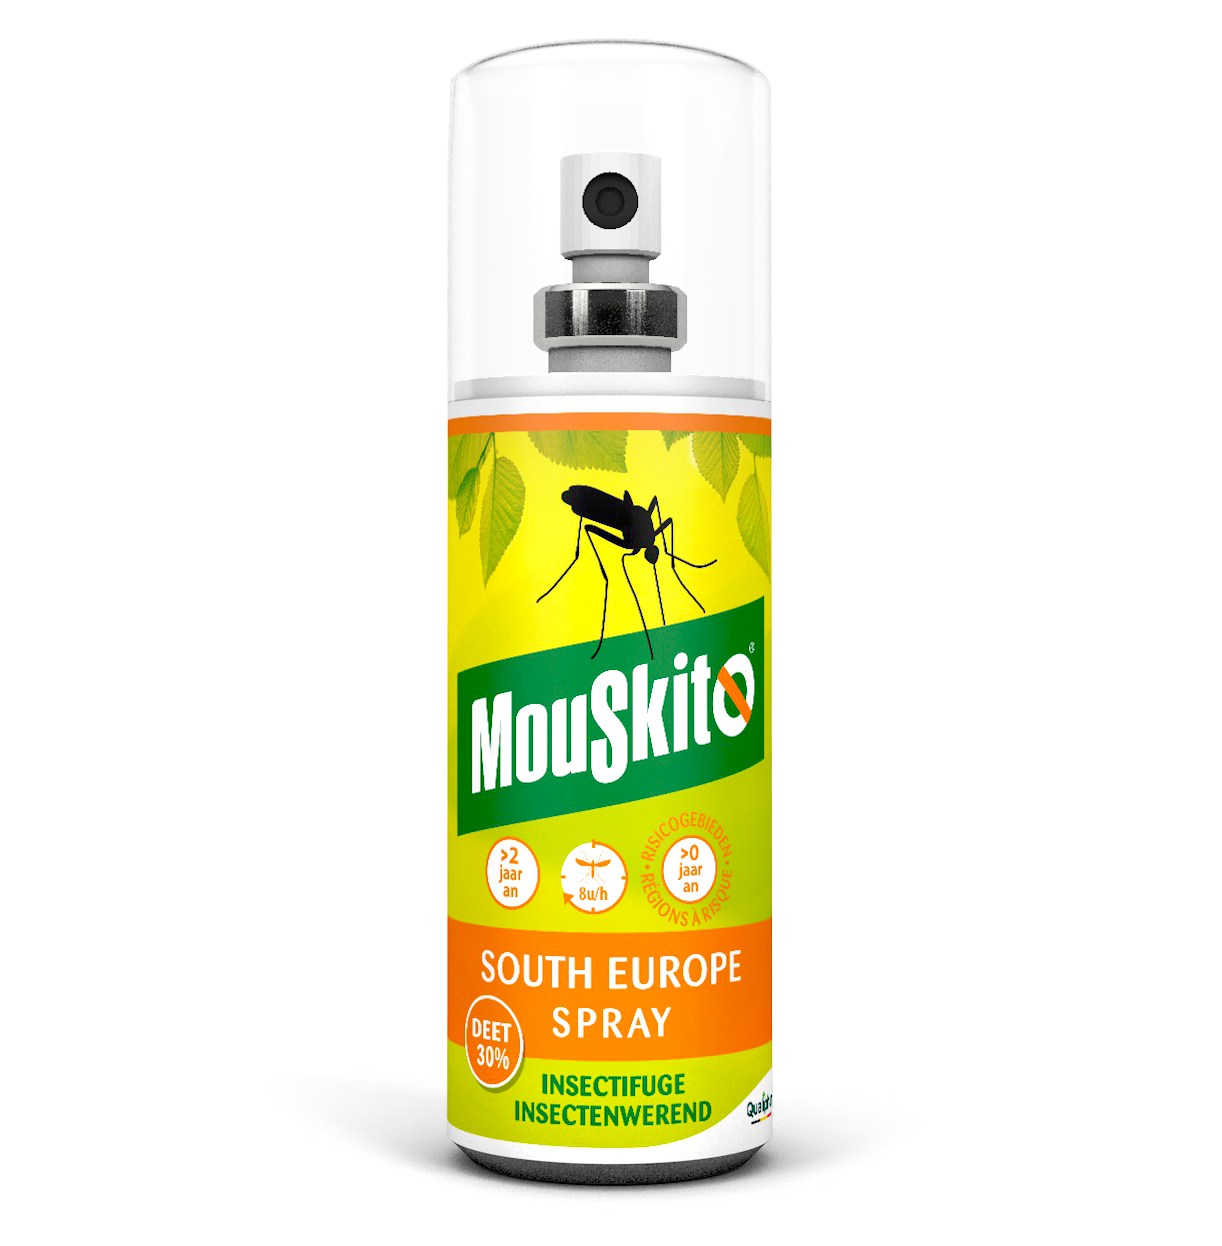 Mouskito® South Europe Spray